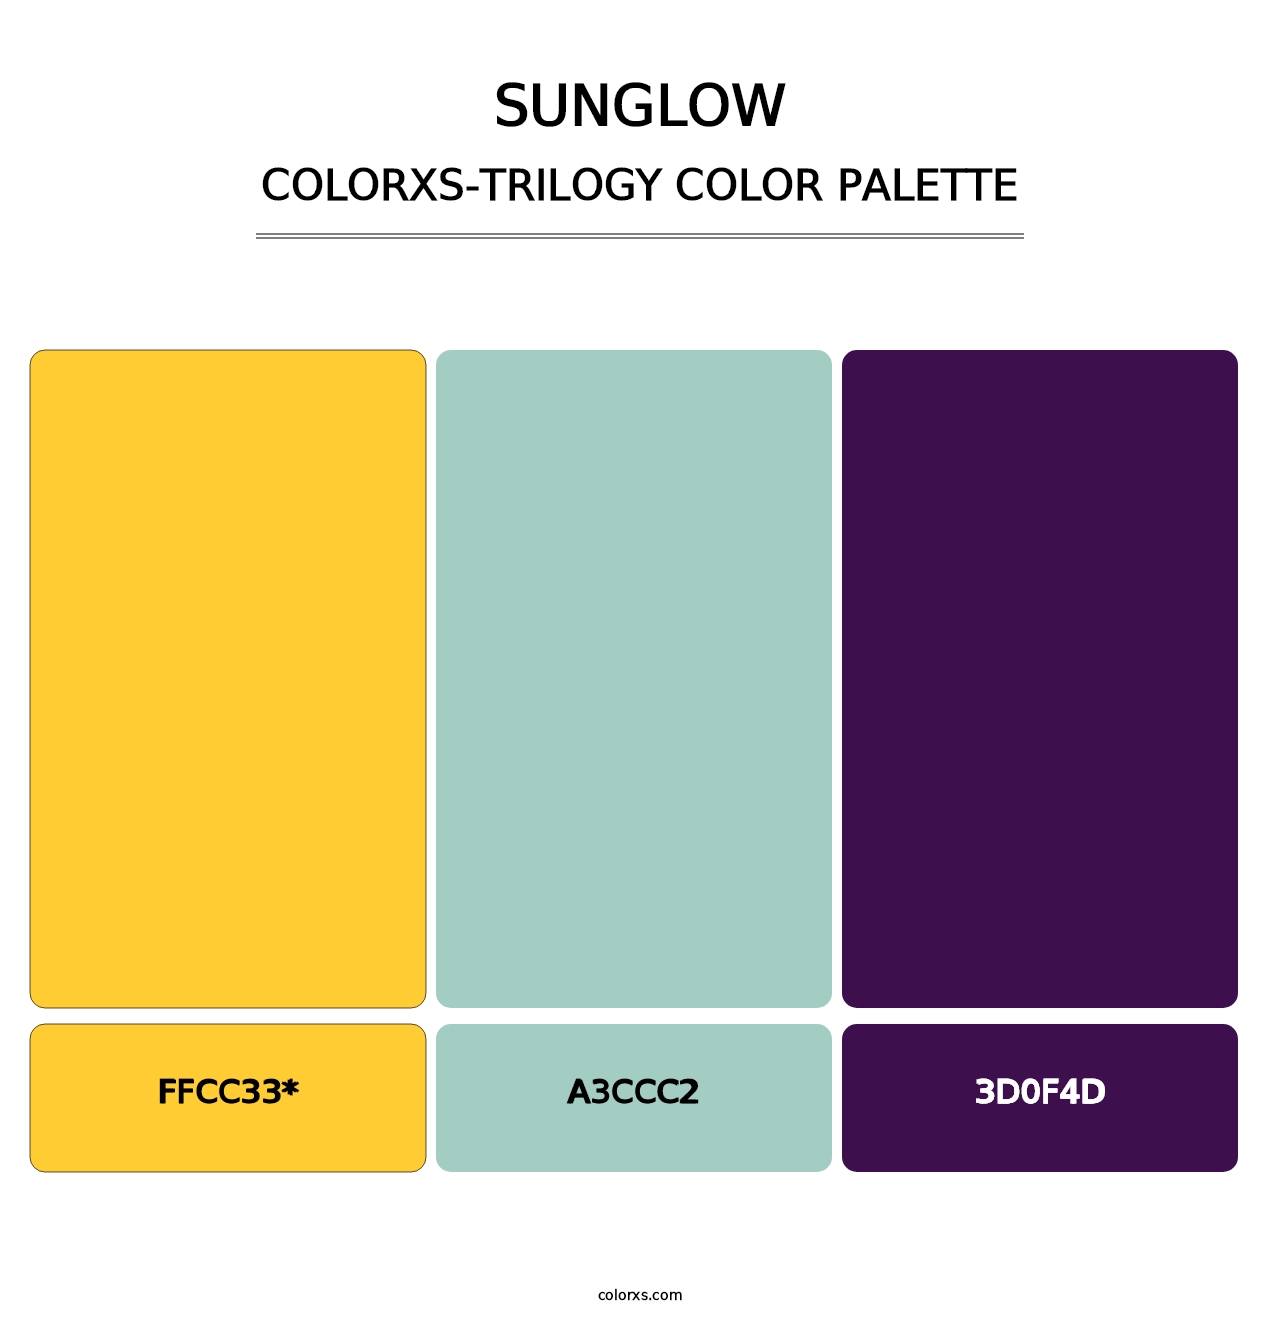 Sunglow - Colorxs Trilogy Palette